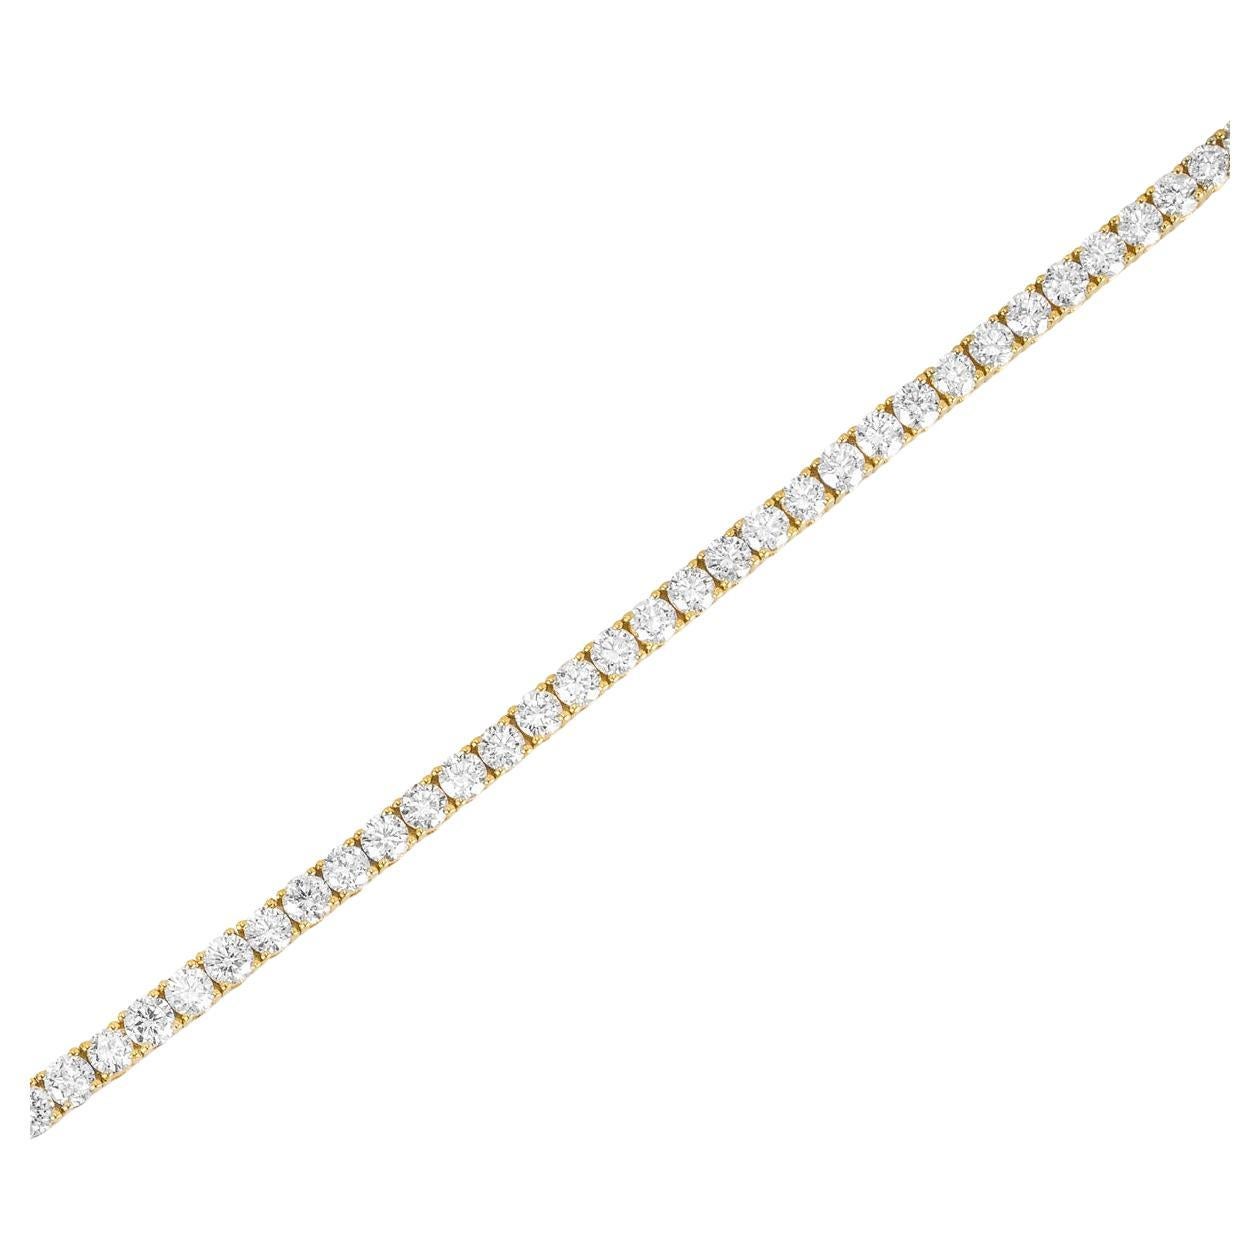 Bracelet étincelant en or jaune 18 carats avec lignes de diamants. Le bracelet de tennis est orné de 67 diamants ronds de taille brillant sertis dans une monture à quatre griffes pour un poids total de 4,27 ct, de couleur F-G et de pureté SI. Le